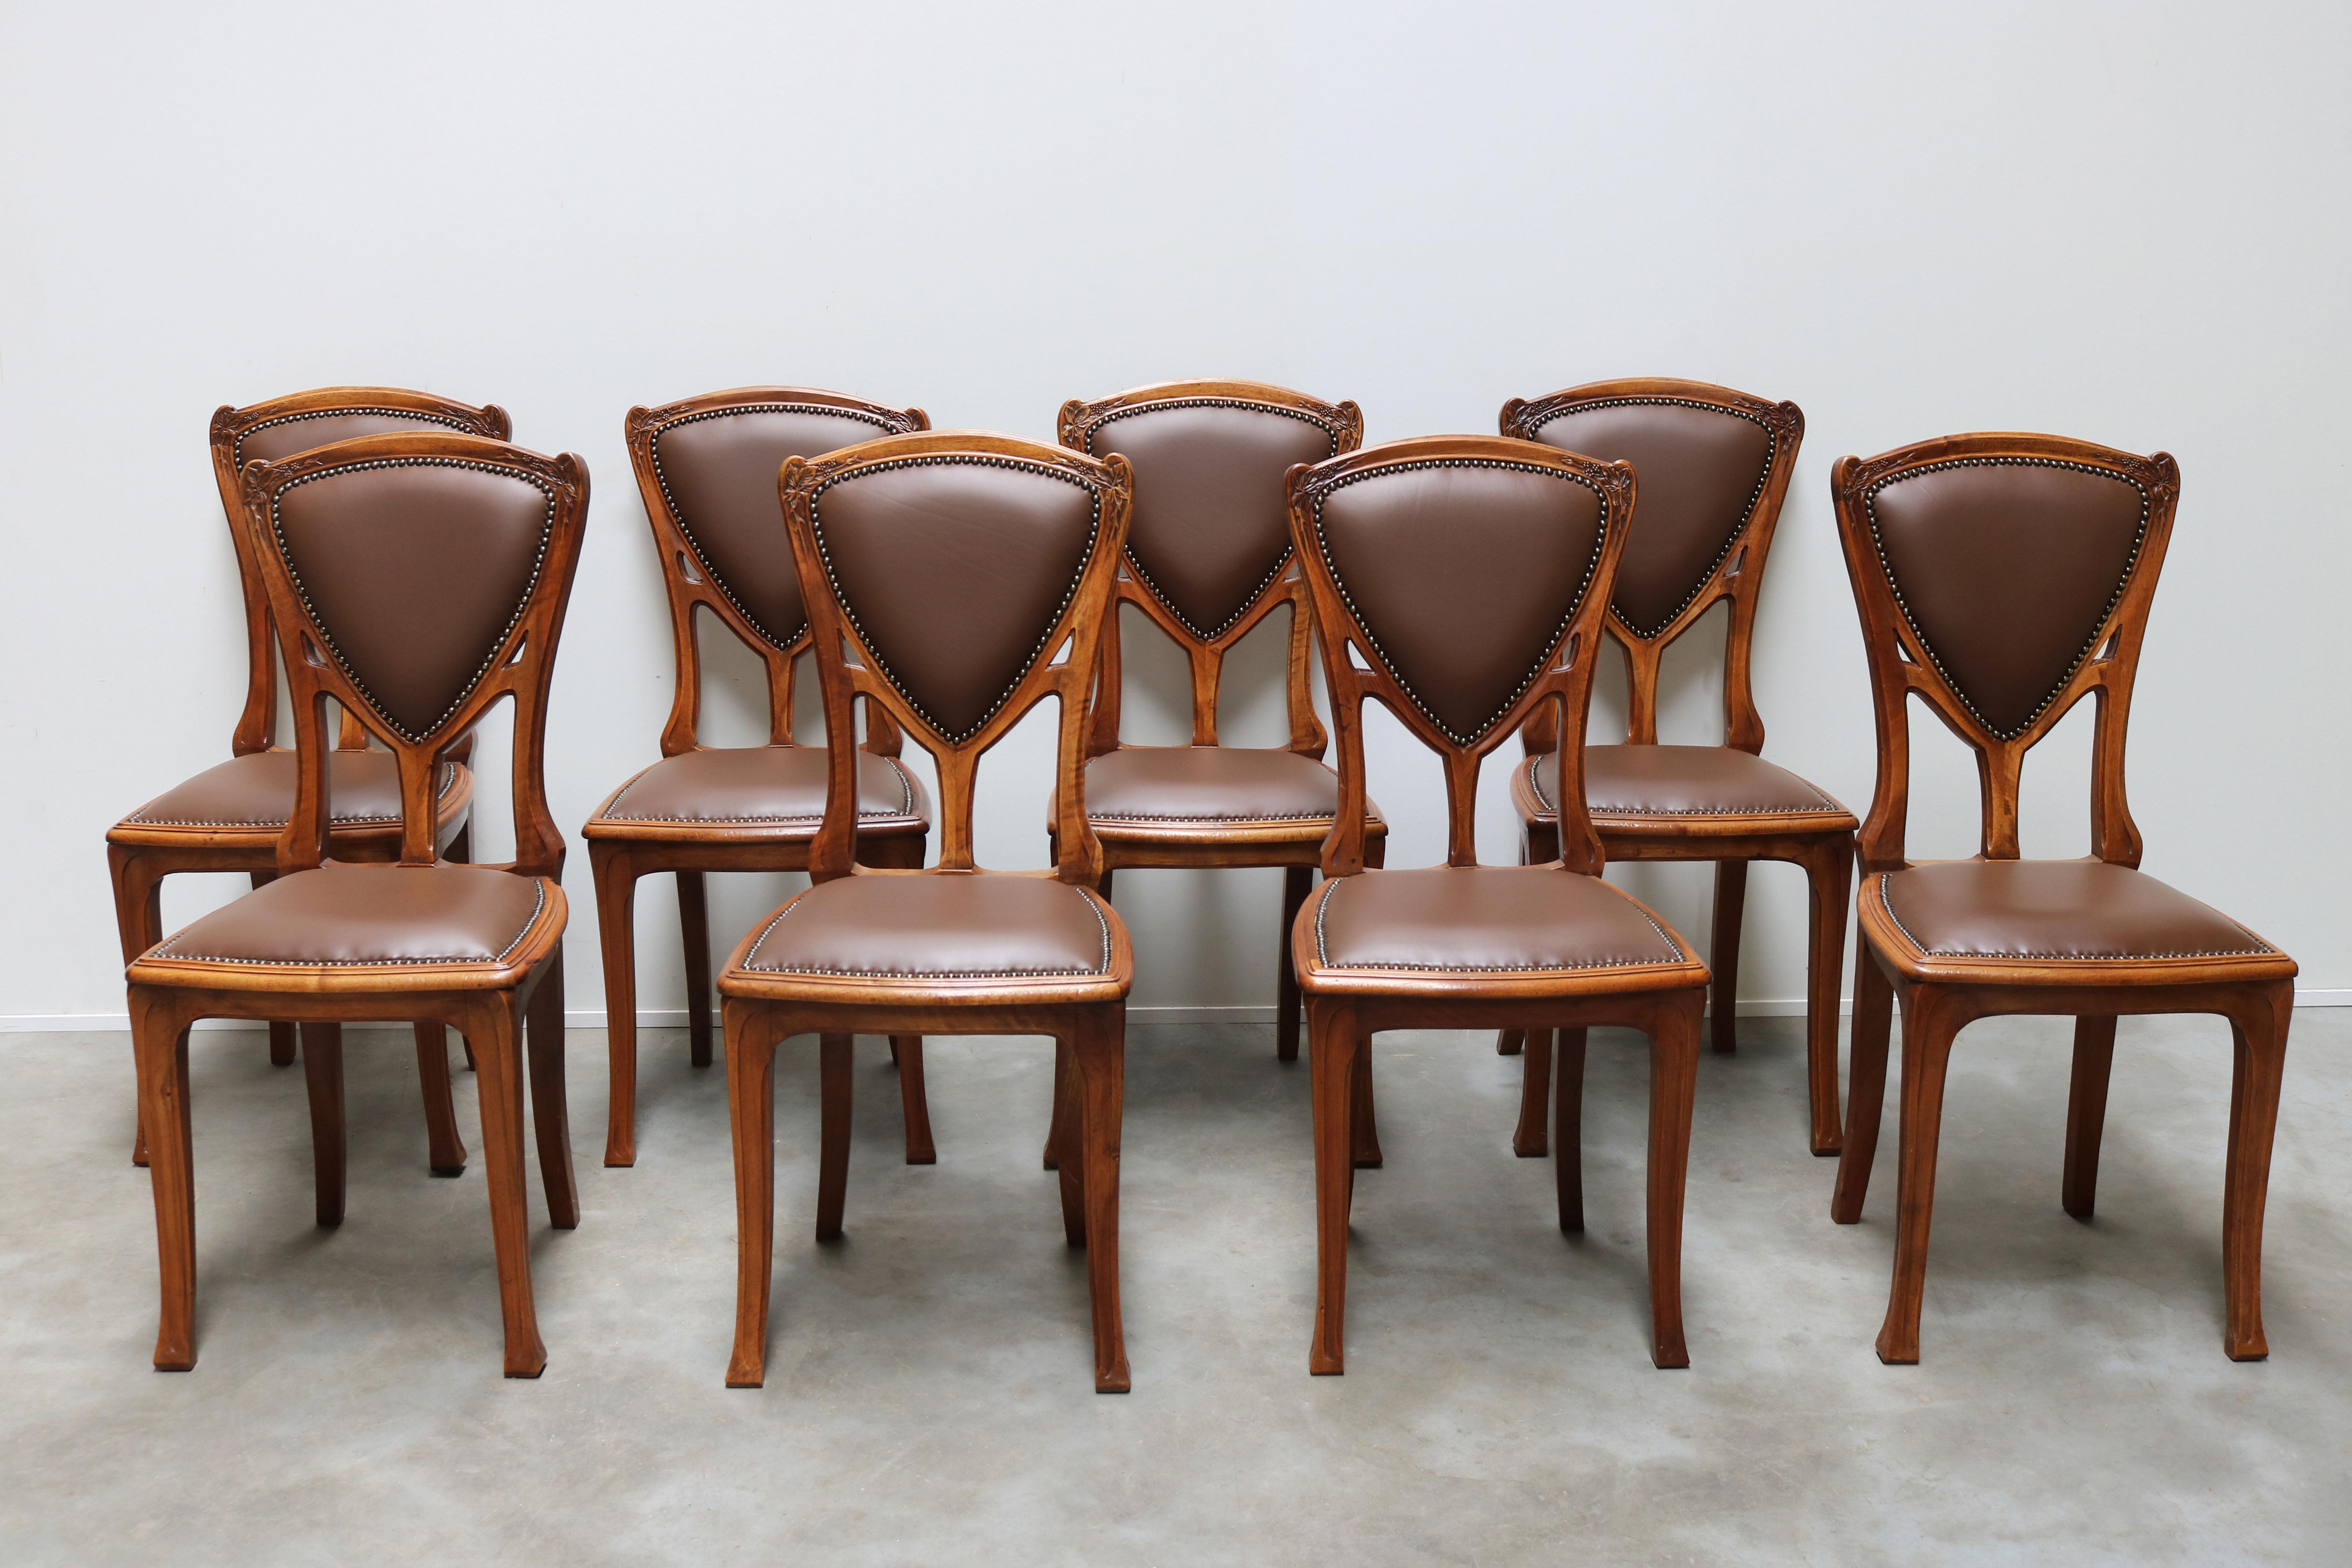 Exquis et très rare ! Cet ensemble de salle à manger Art Nouveau français composé de 8 chaises et d'une table assortie par Eugène Vallin en noyer massif. Ces chaises ont été conçues pour le célèbre bâtiment/projet Art nouveau 